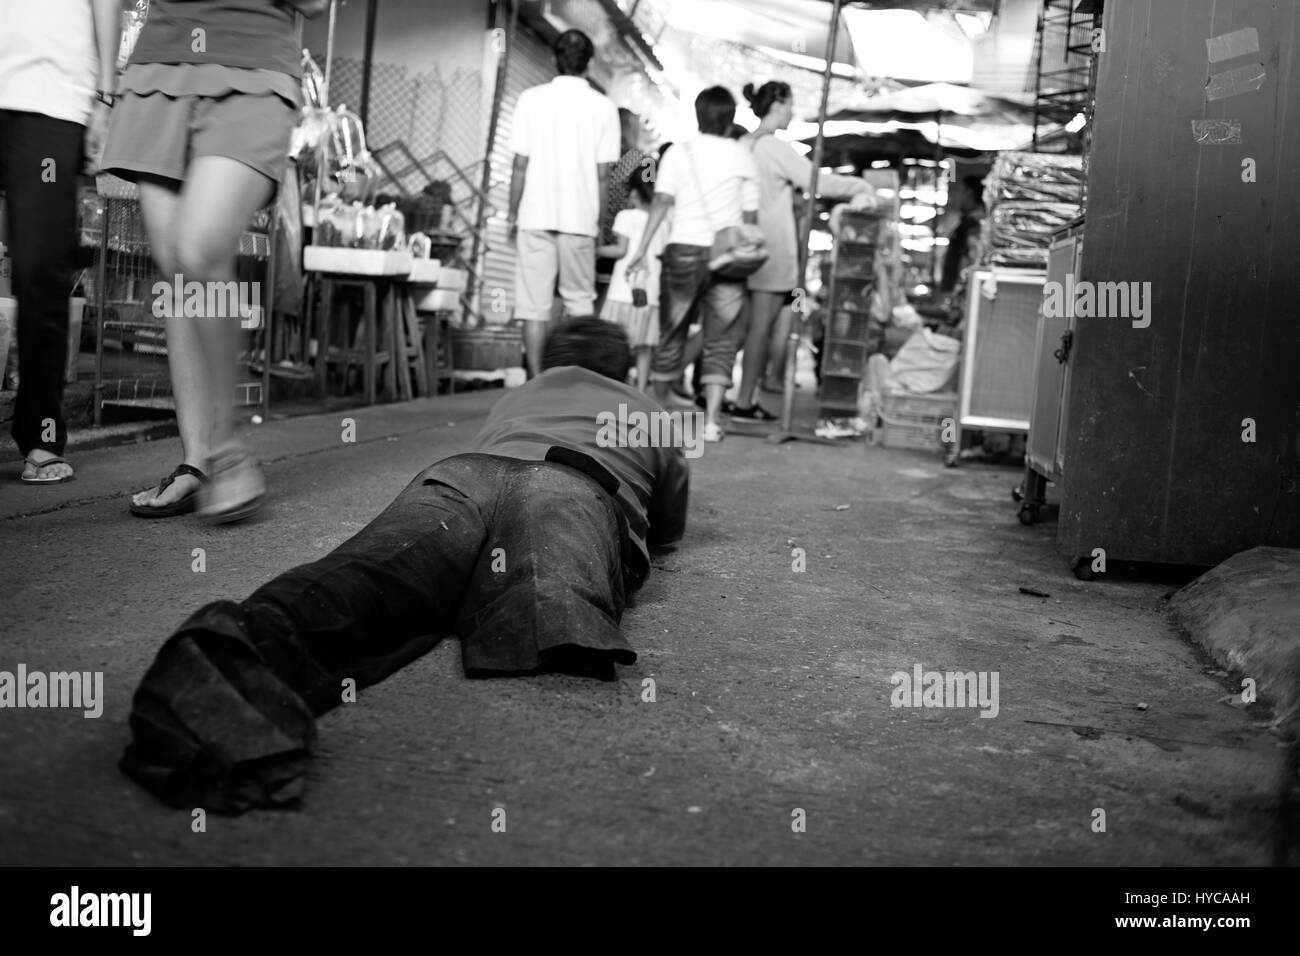 lame man at market place, bangkok, thailand Stock Photo